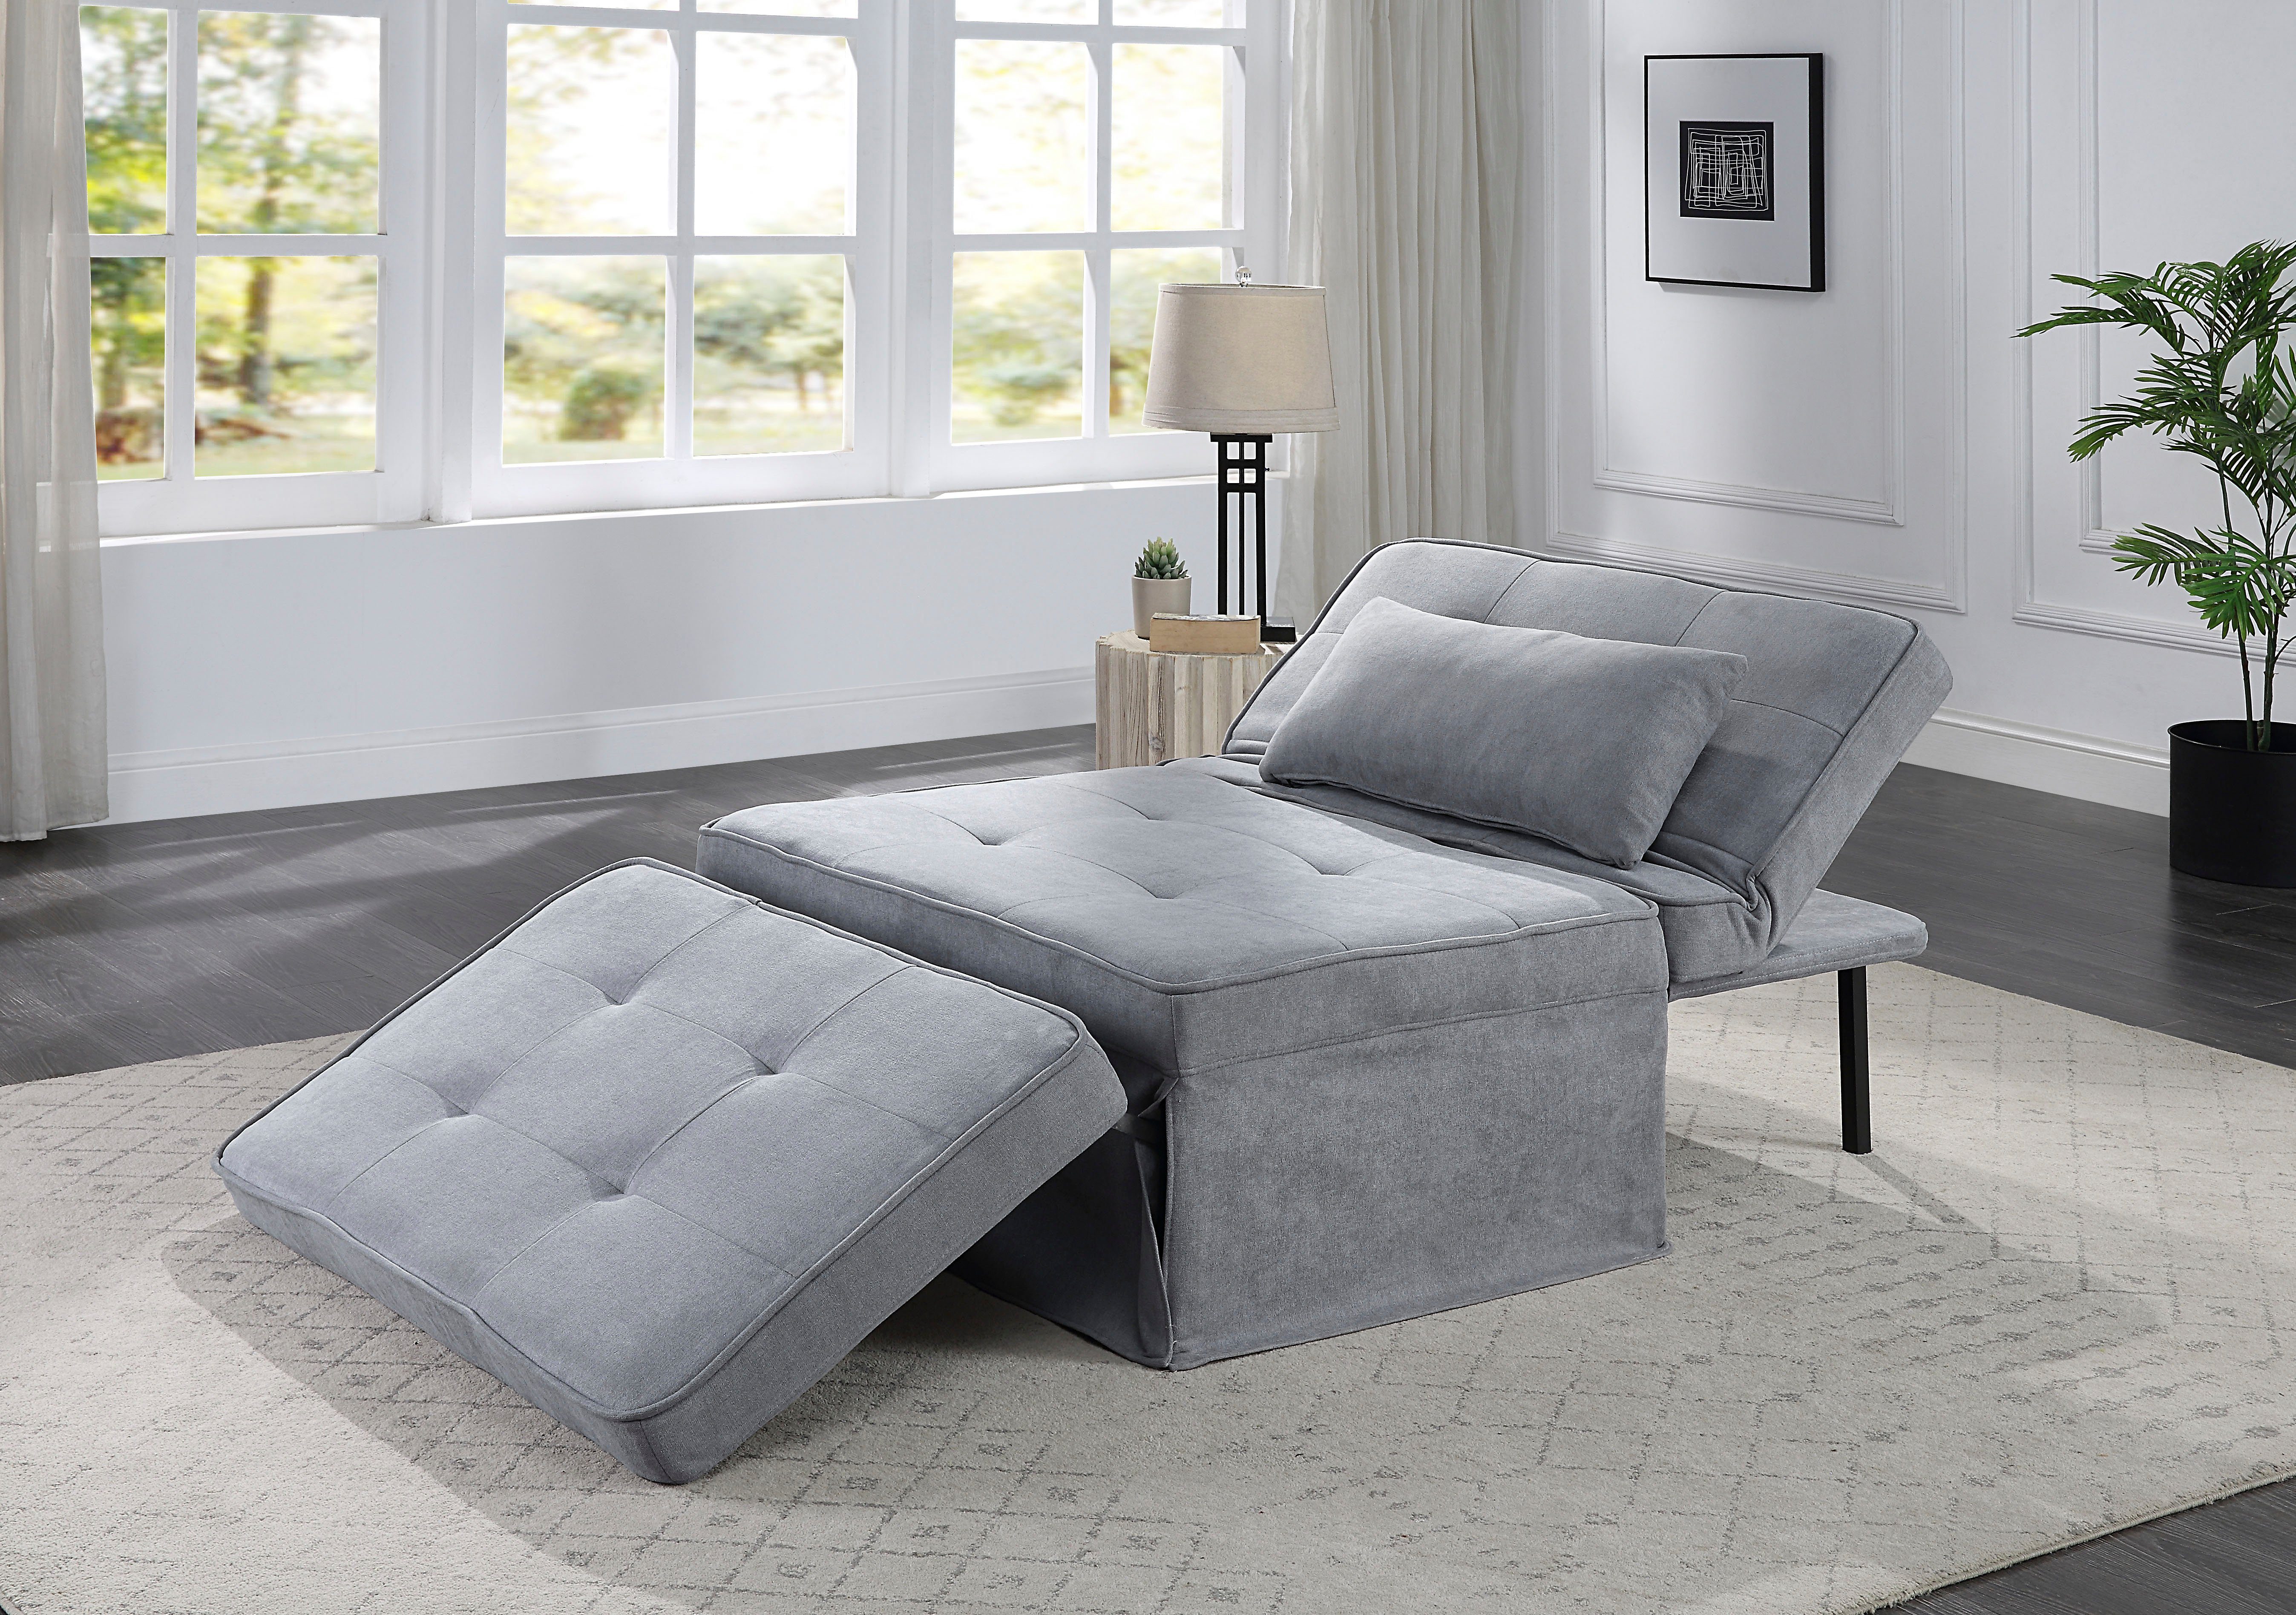 atlantic home collection slaapbank finn te veranderen in een loungestoel, relaxfauteuil en logeerbed, incl. kussen grijs